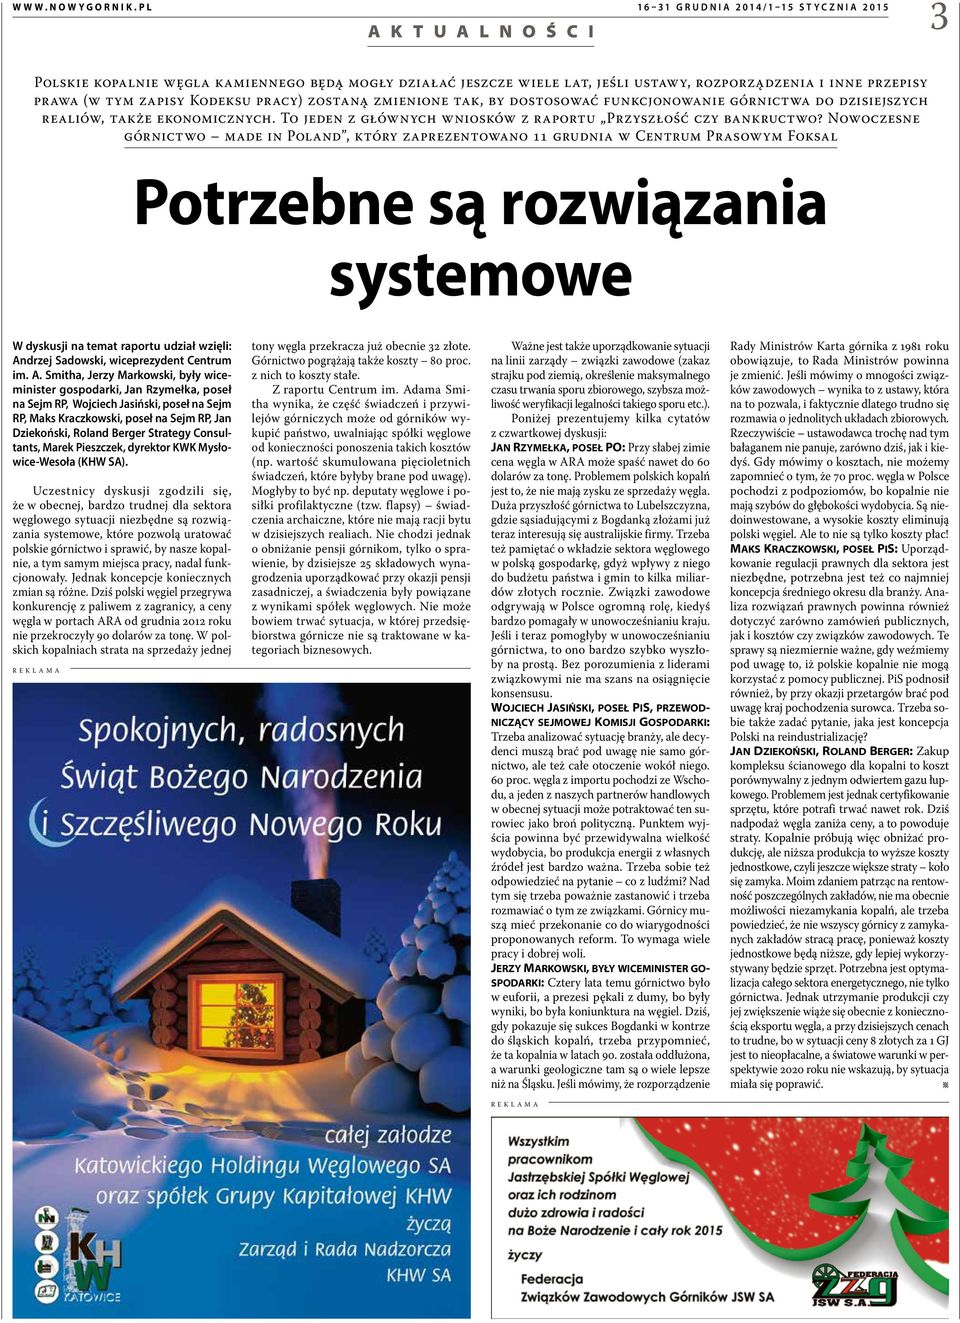 Nowoczesne górnictwo made in Poland, który zaprezentowano 11 grudnia w Centrum Prasowym Foksal Potrzebne są rozwiązania systemowe W dyskusji na temat raportu udział wzięli: Andrzej Sadowski,